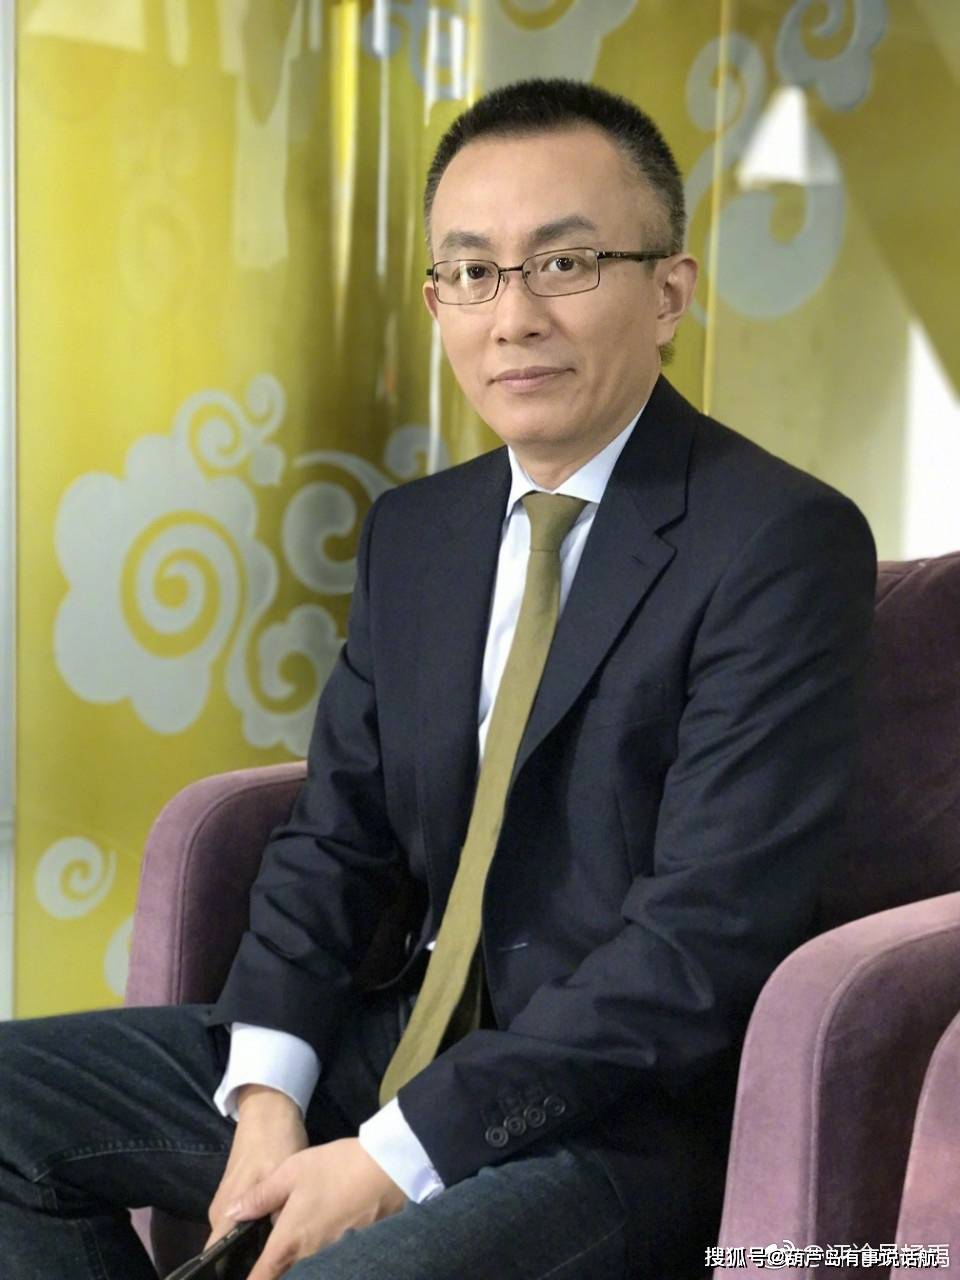 原创杨禹,最牛评论员,他是如何从一个普通主持人,成为央视国脸的